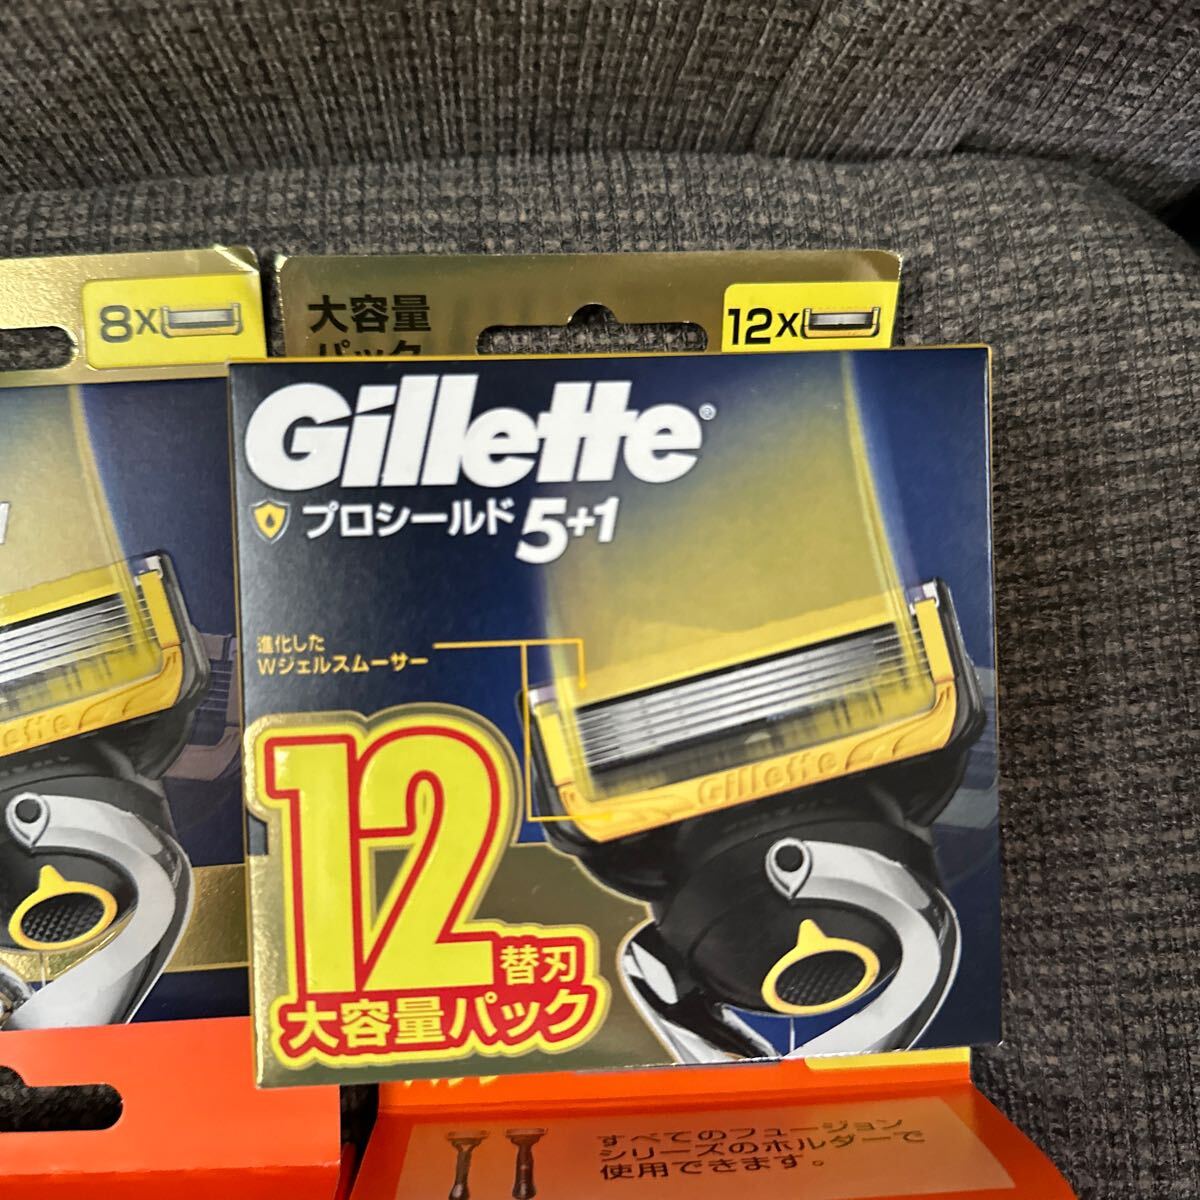 Gilletteji let новый товар не использовался Fusion 5+1 бритва большая вместимость упаковка Pro защита выгода комплект 5 листов лезвие воздушный бритье ...12ko входить 